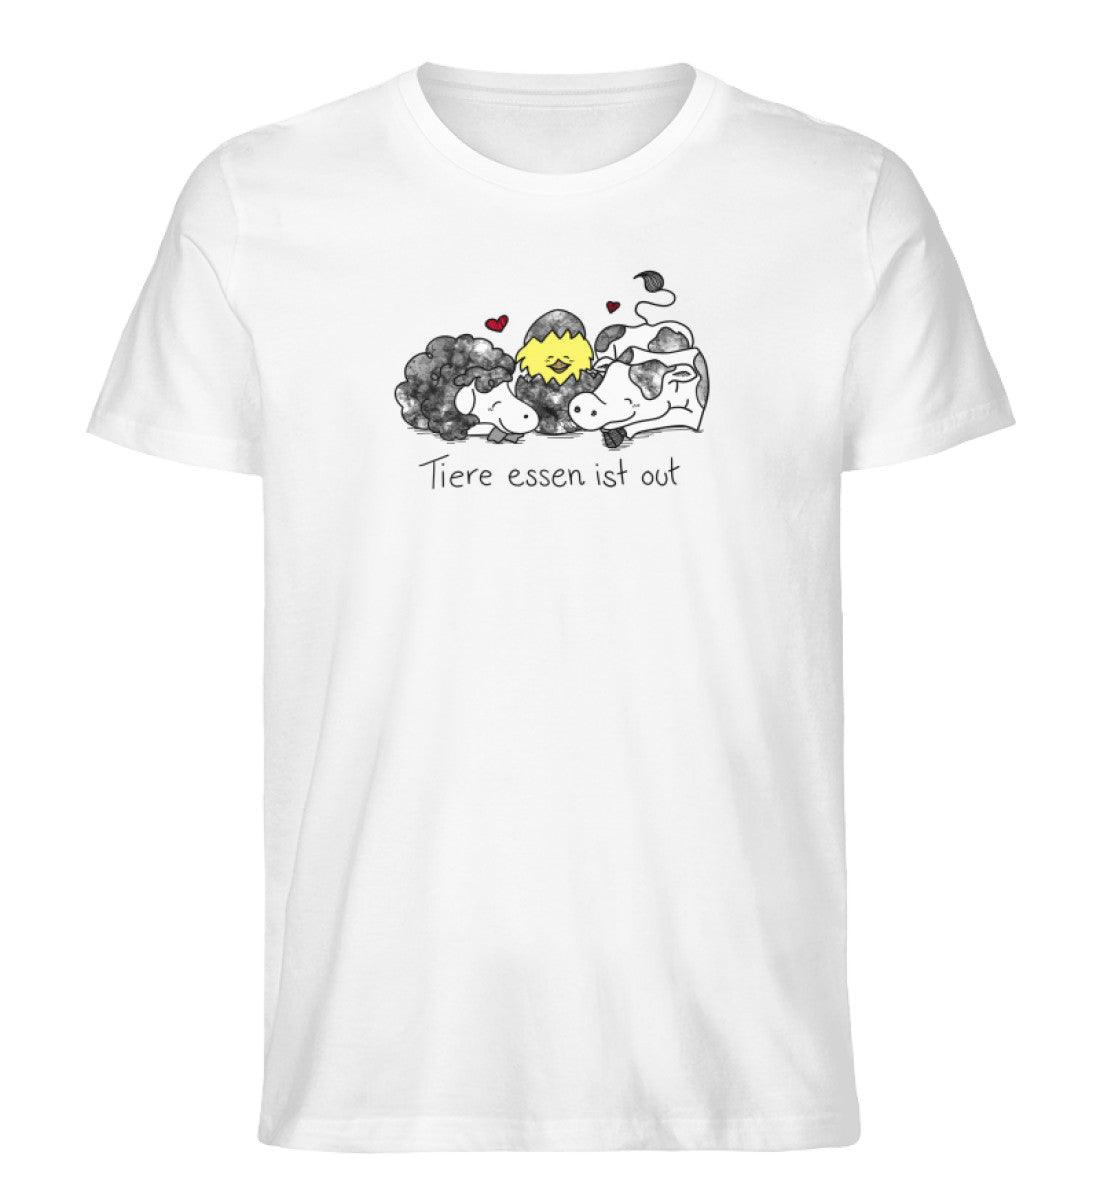 Tiere essen ist out [Herr Tierfreund] - Unisex Organic Shirt - Team Vegan © vegan t shirt